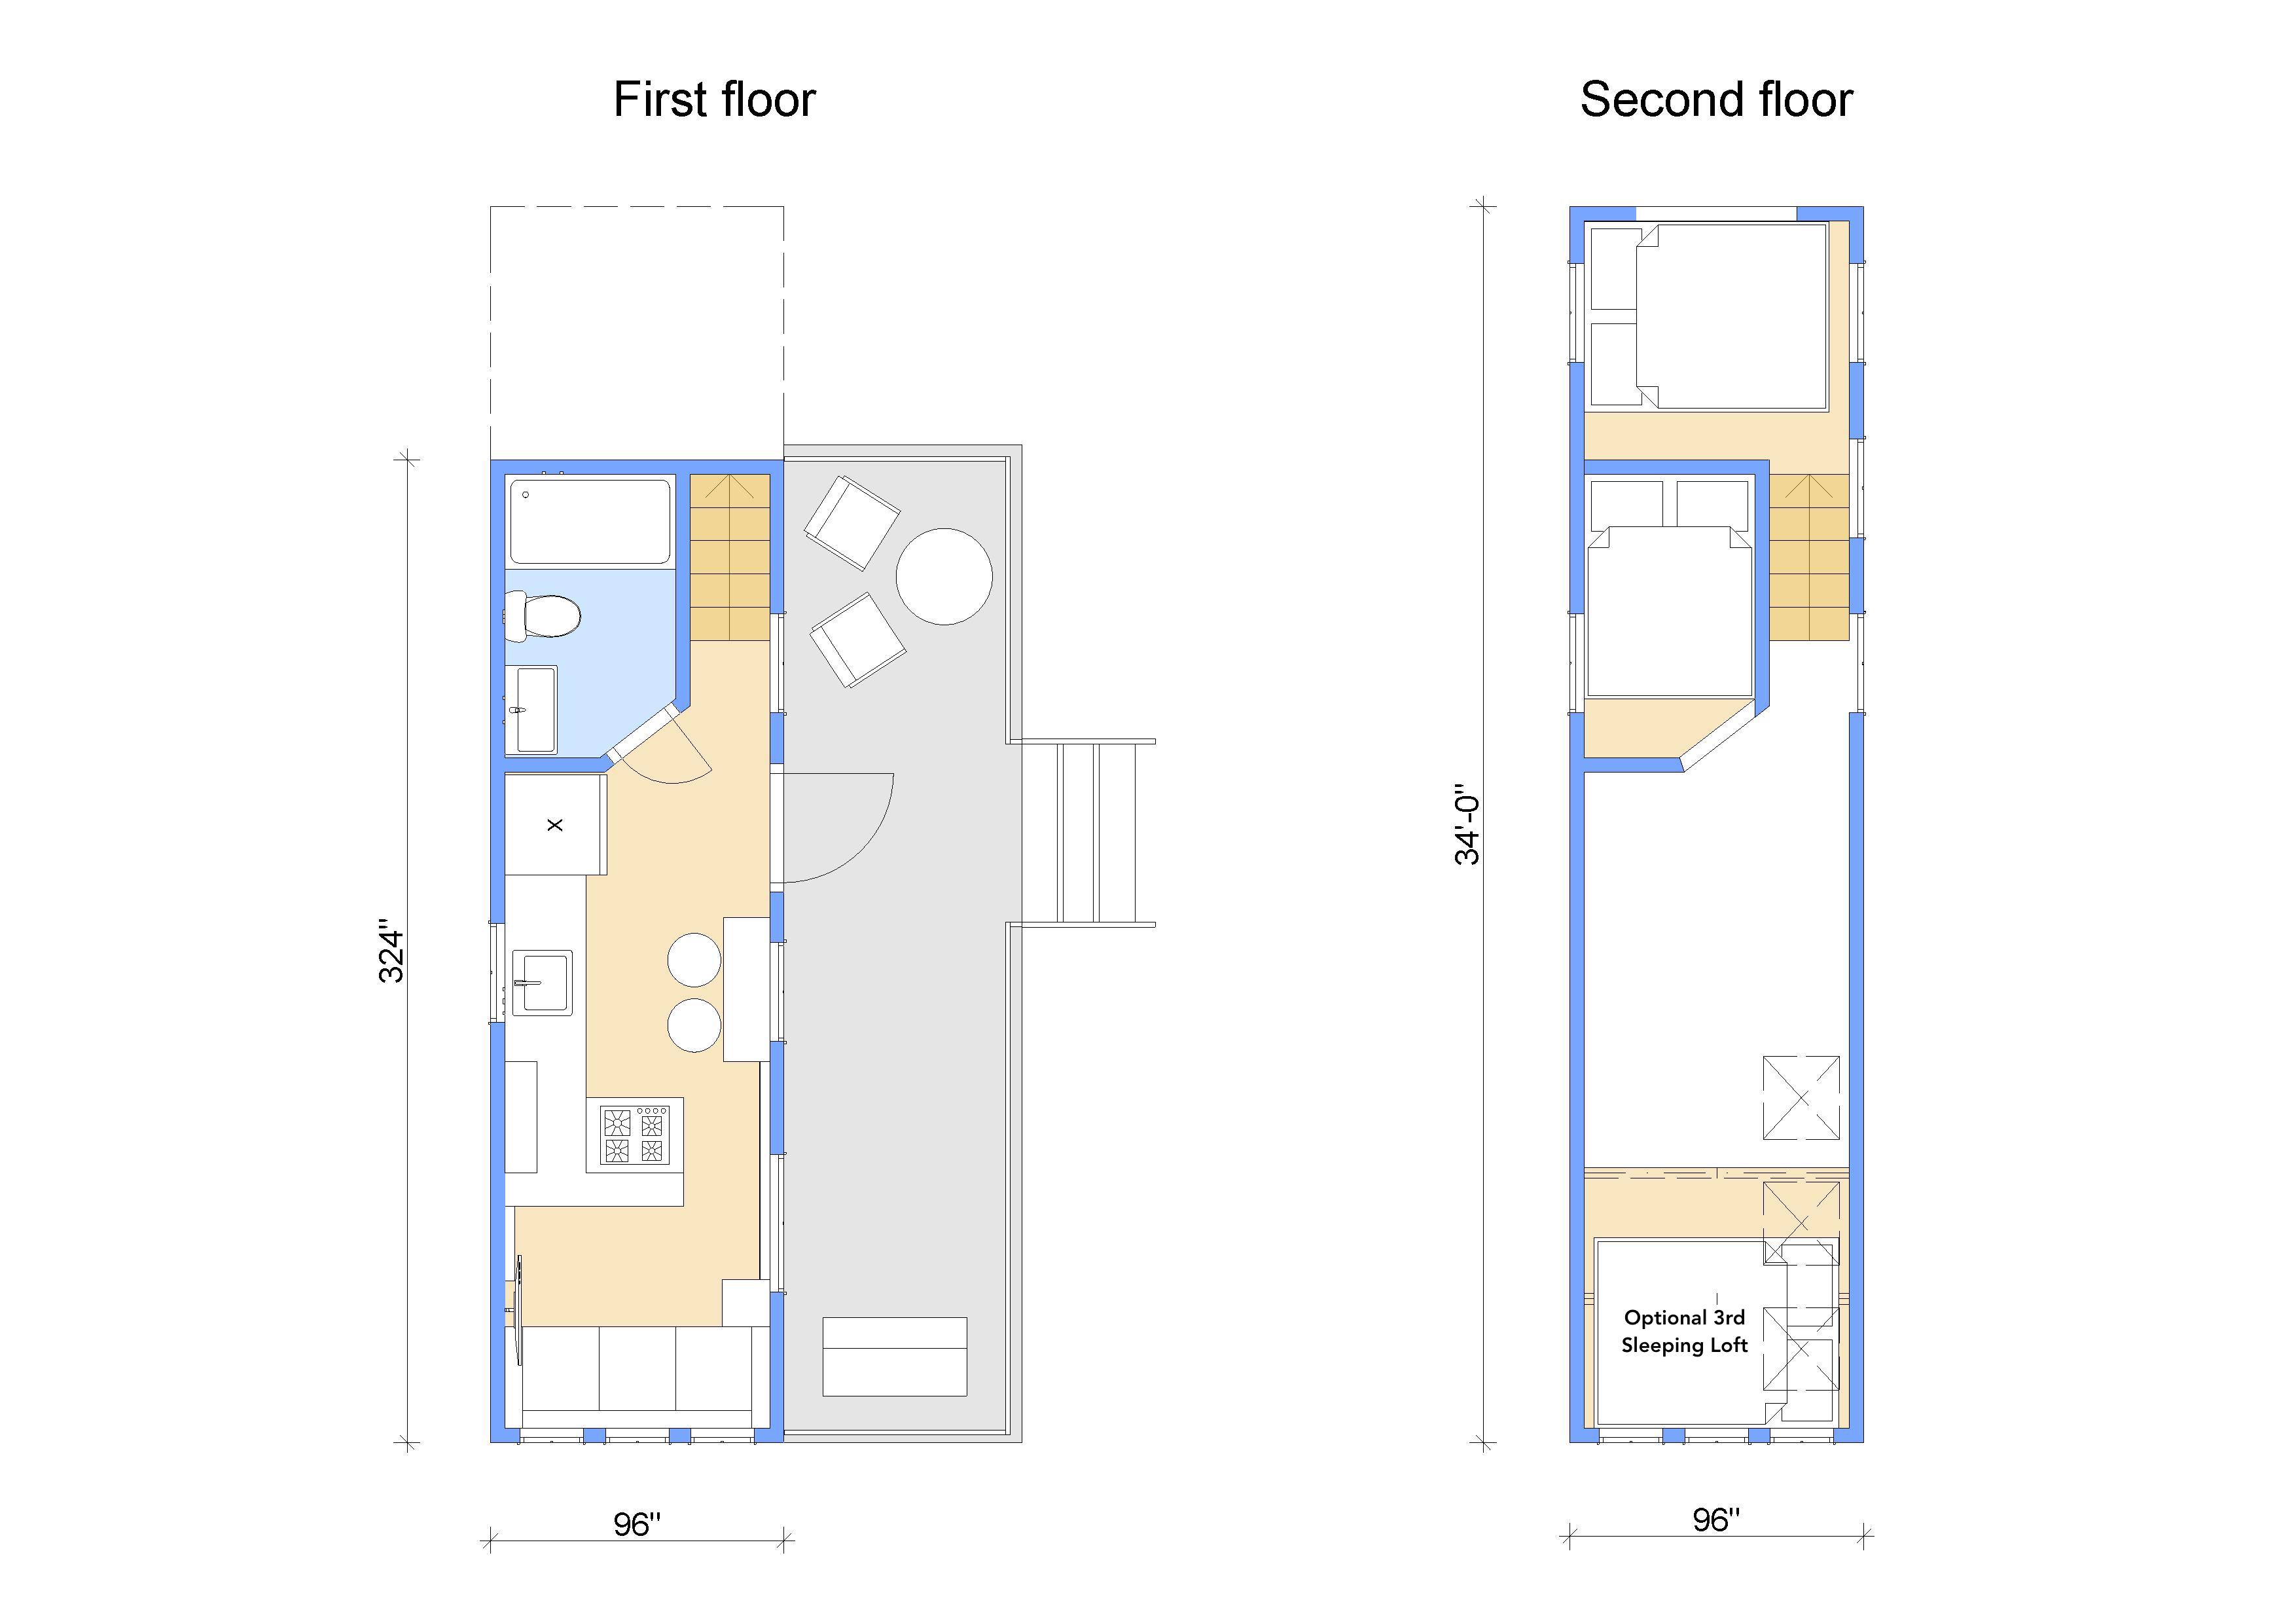 Câte persoane pot locui într-o casă de 27 de metri pătraţi?